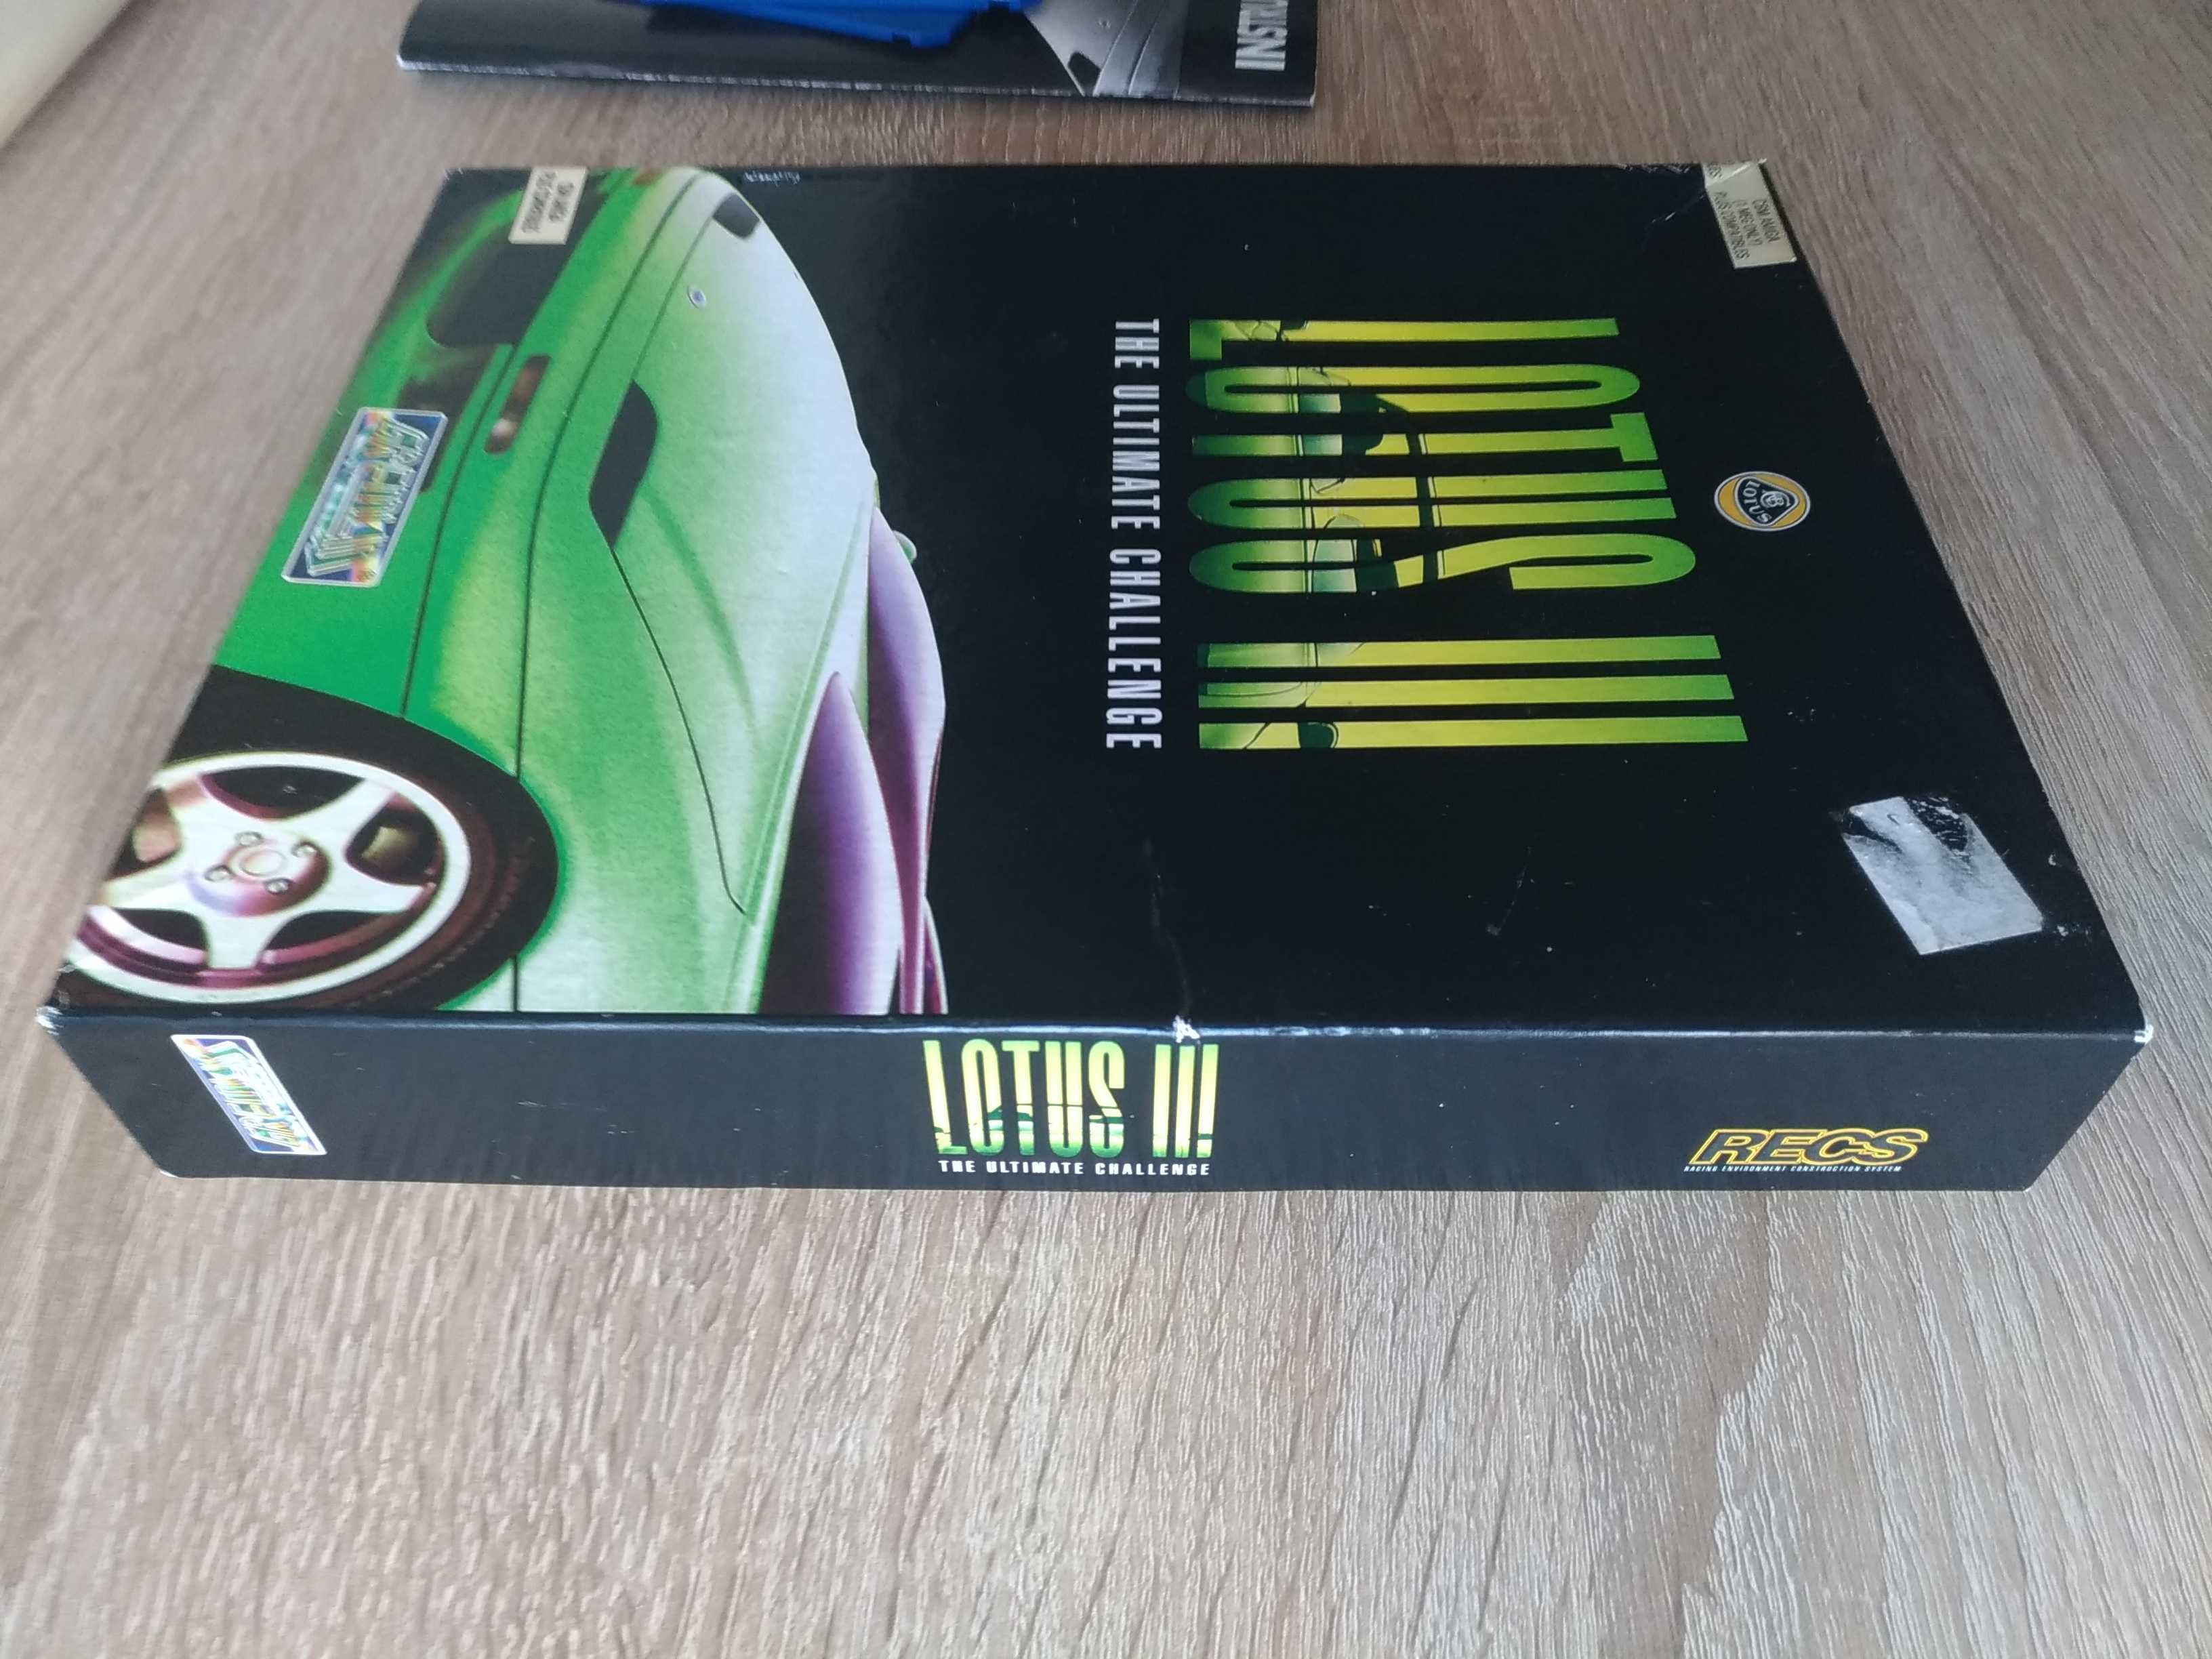 Lotus III The Ultimate Challenge - gra na komputer Amiga, sprawna